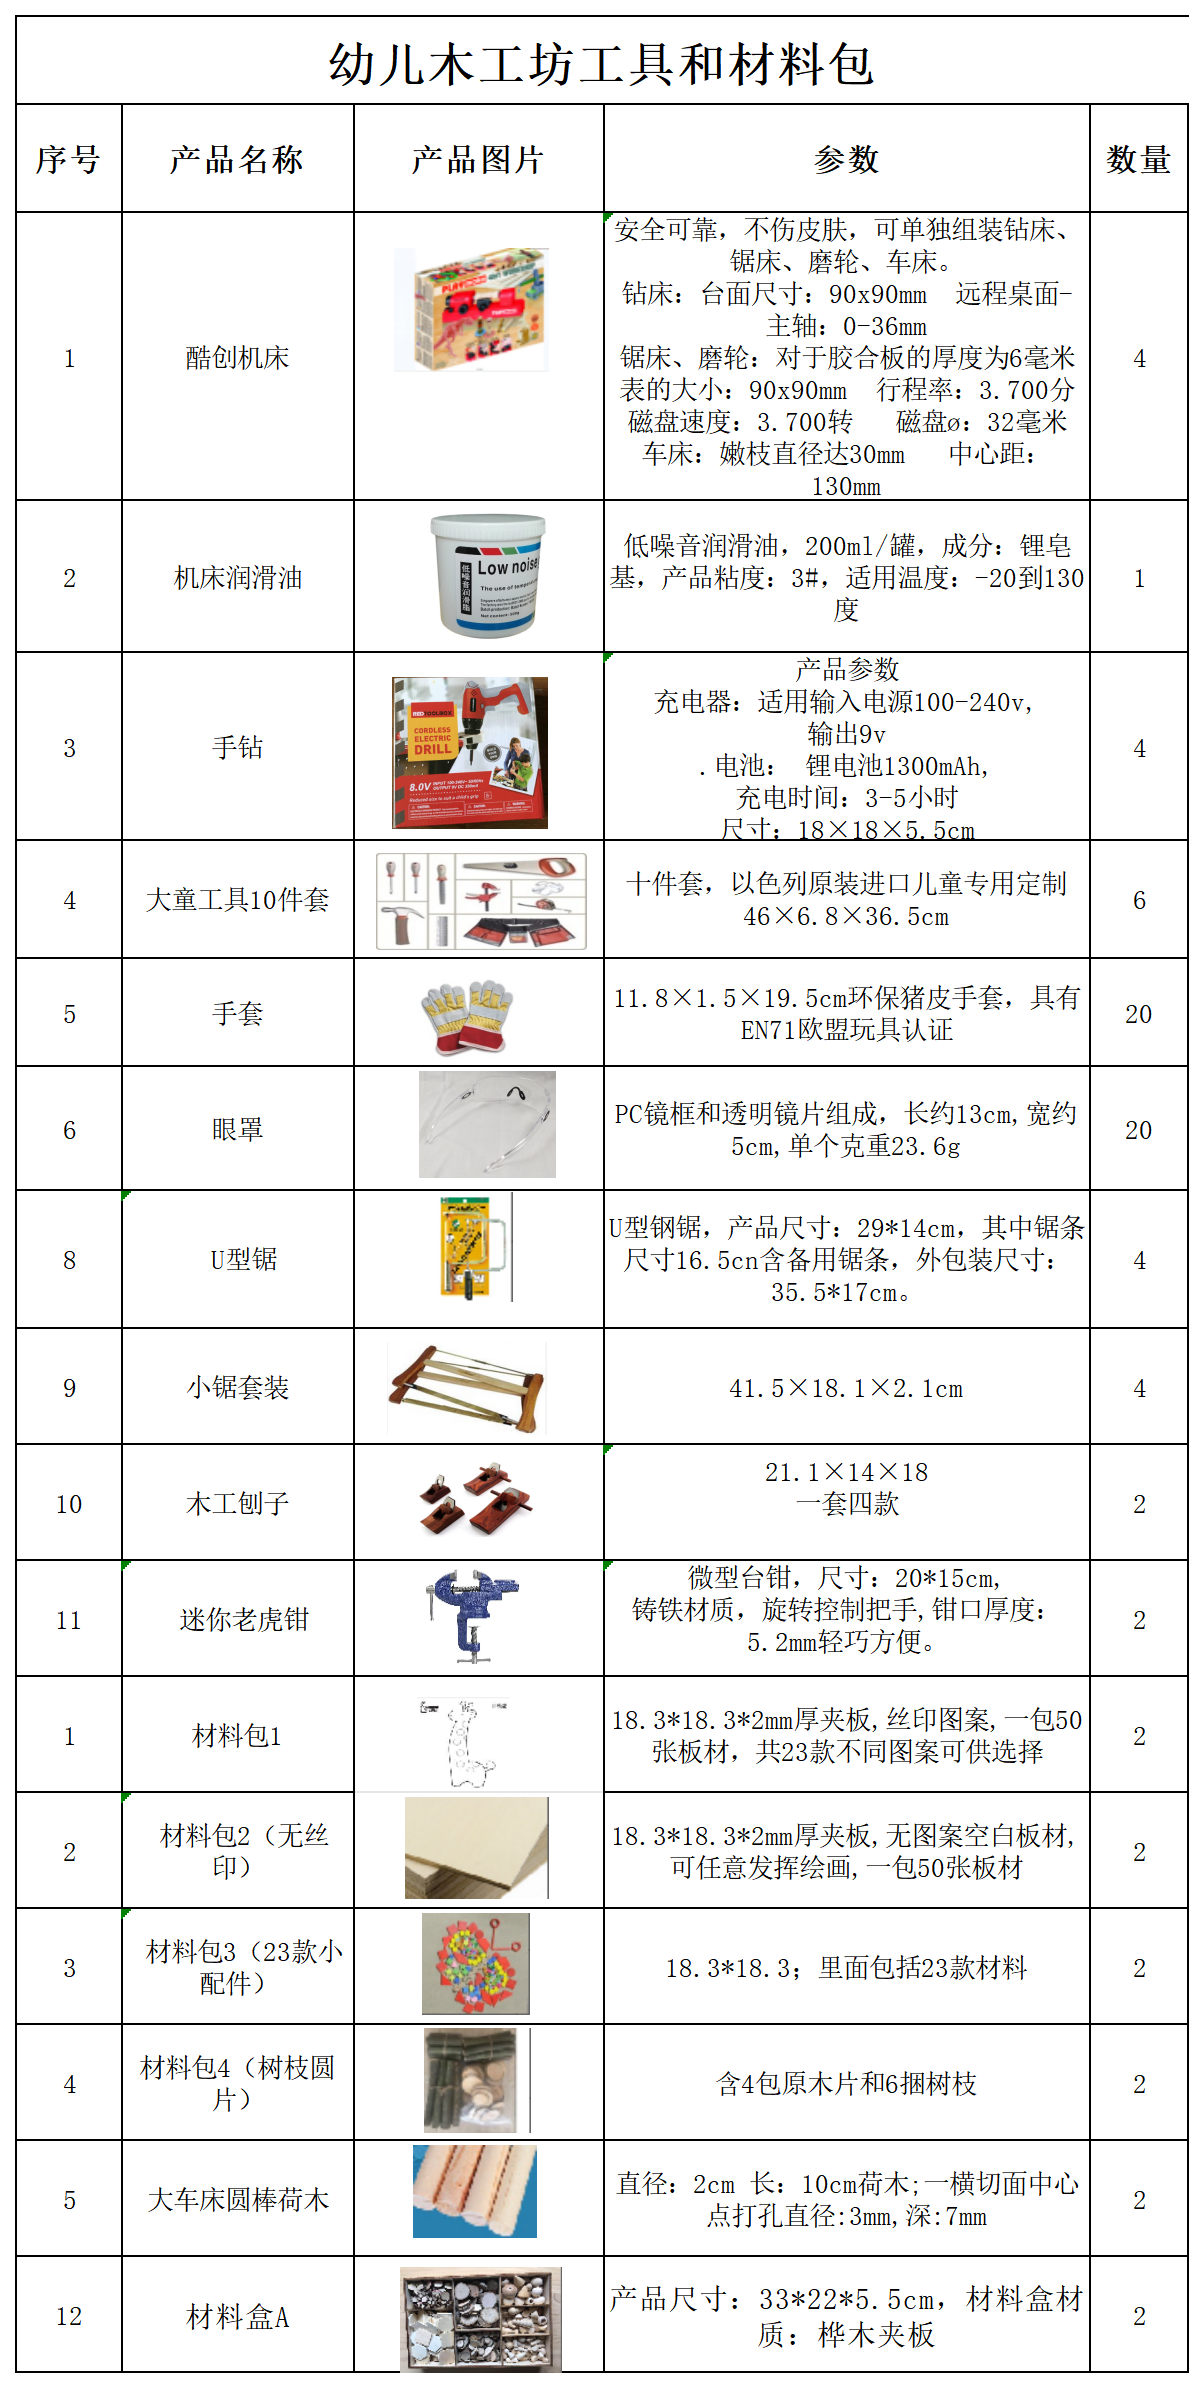 幼儿园木工坊工具和材料包【调整】_Sheet1.png